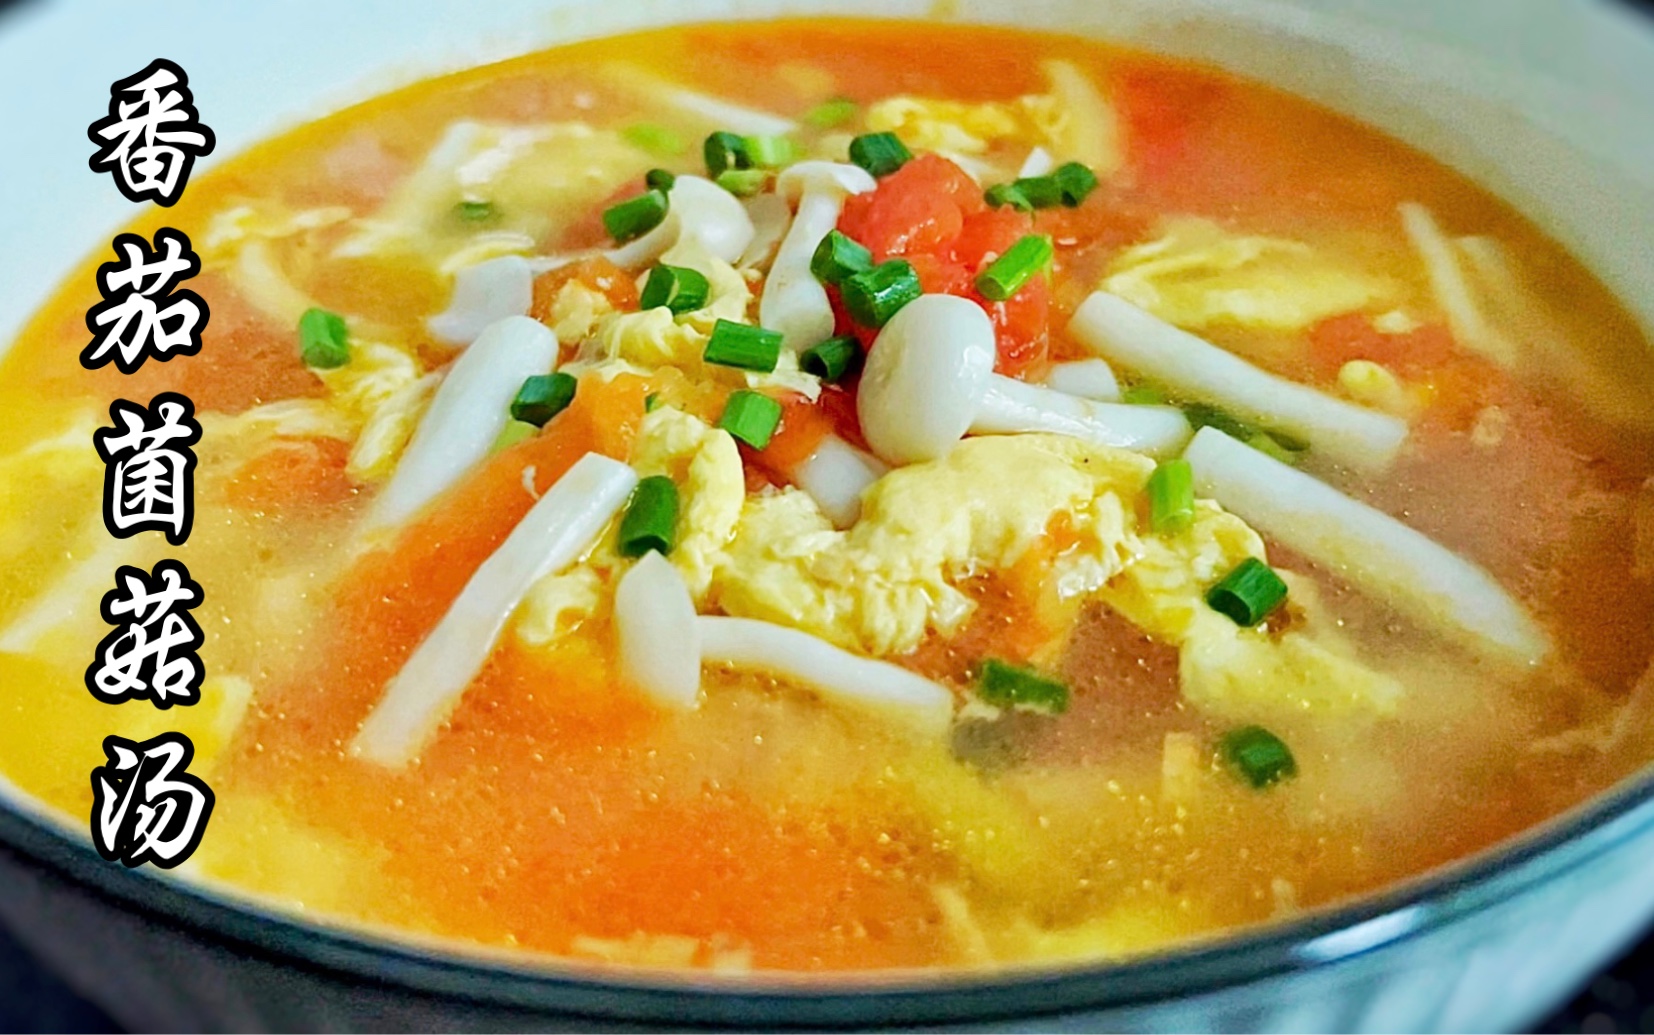 搭配鸡蛋和海鲜菇做的番茄菌菇汤真的是汤鲜味美,酸甜开胃又营养